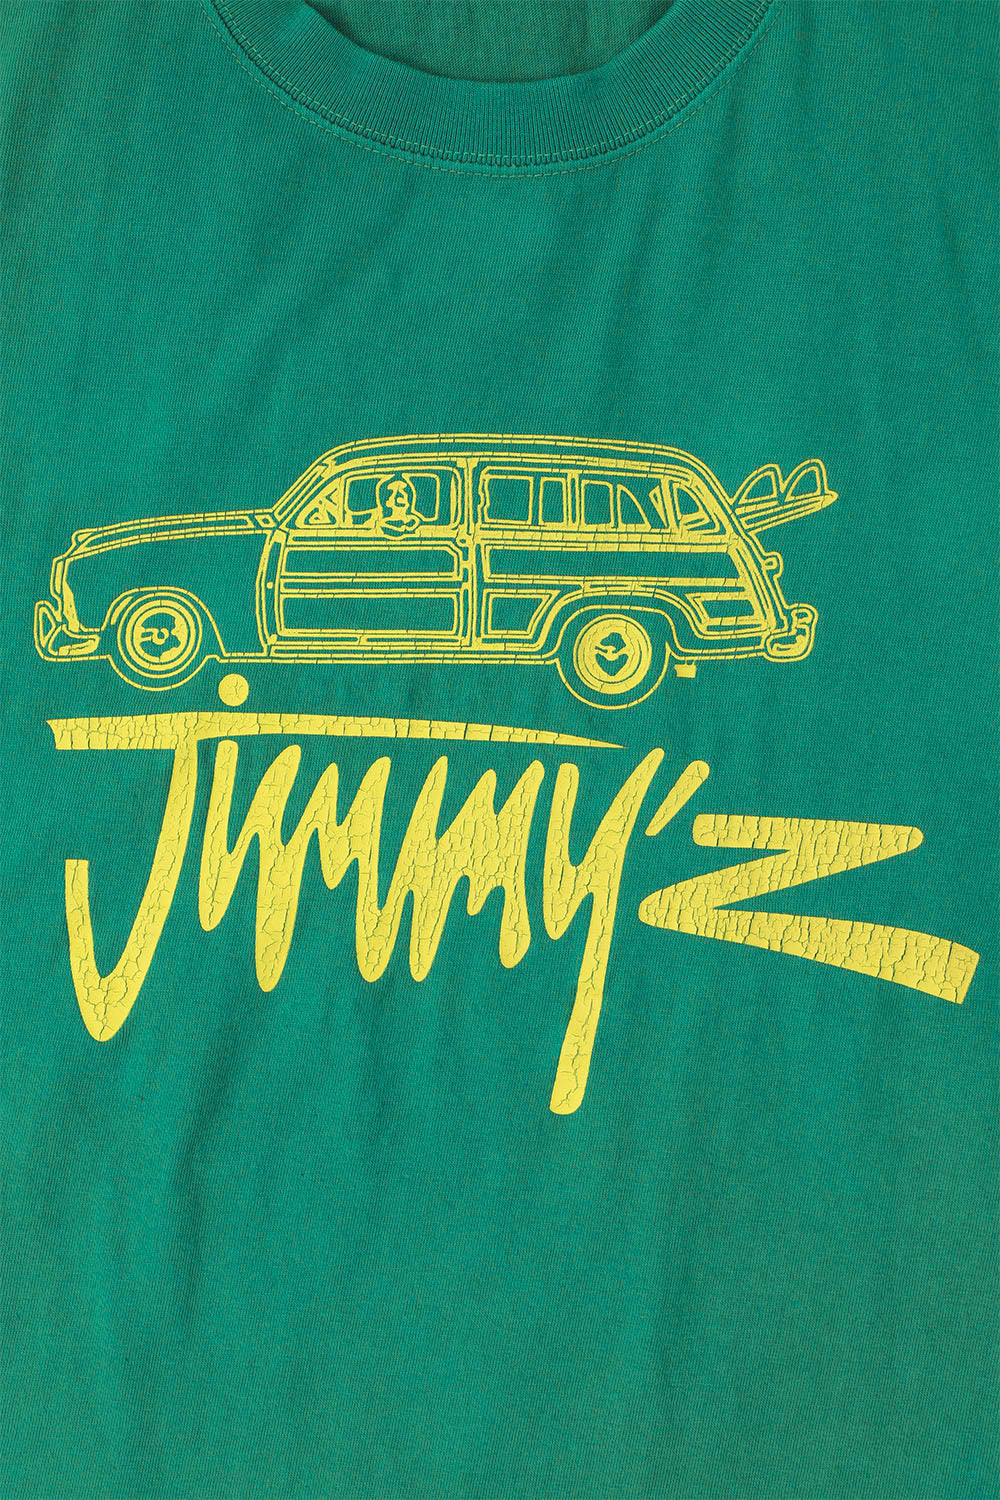 新品人気SALEPALACE JIMMY\'Z WASHED T-SHIRT Mint L パレス Tシャツ/カットソー(半袖/袖なし)